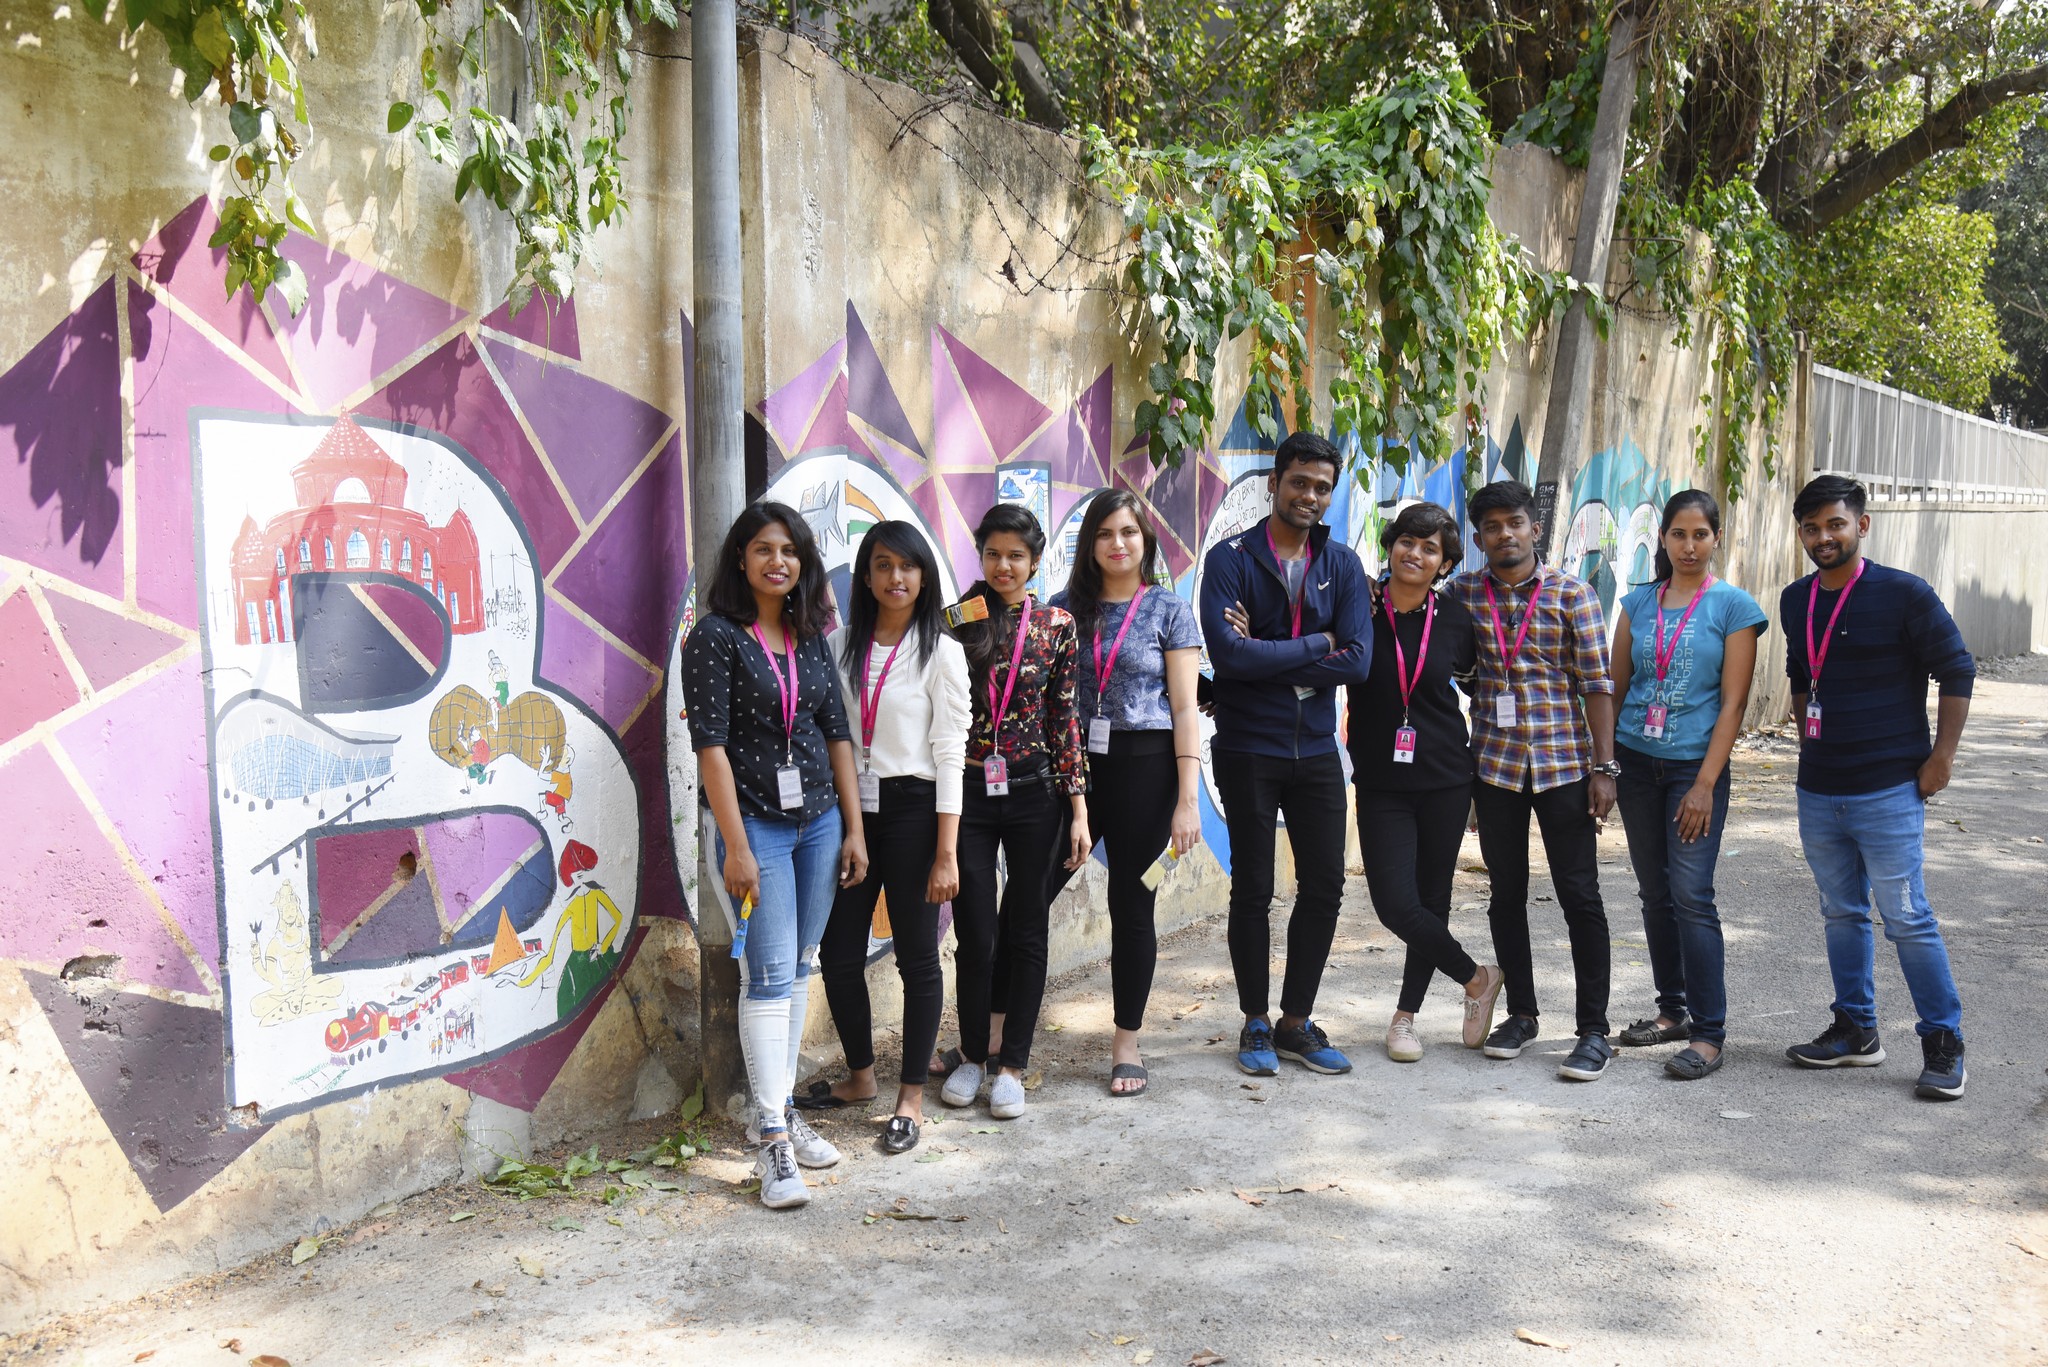 Namma Bengaluru – Wall art by students of JD Institute namma bengaluru - Namma Bengaluru 6 - Namma Bengaluru – Wall art by students of JD Institute